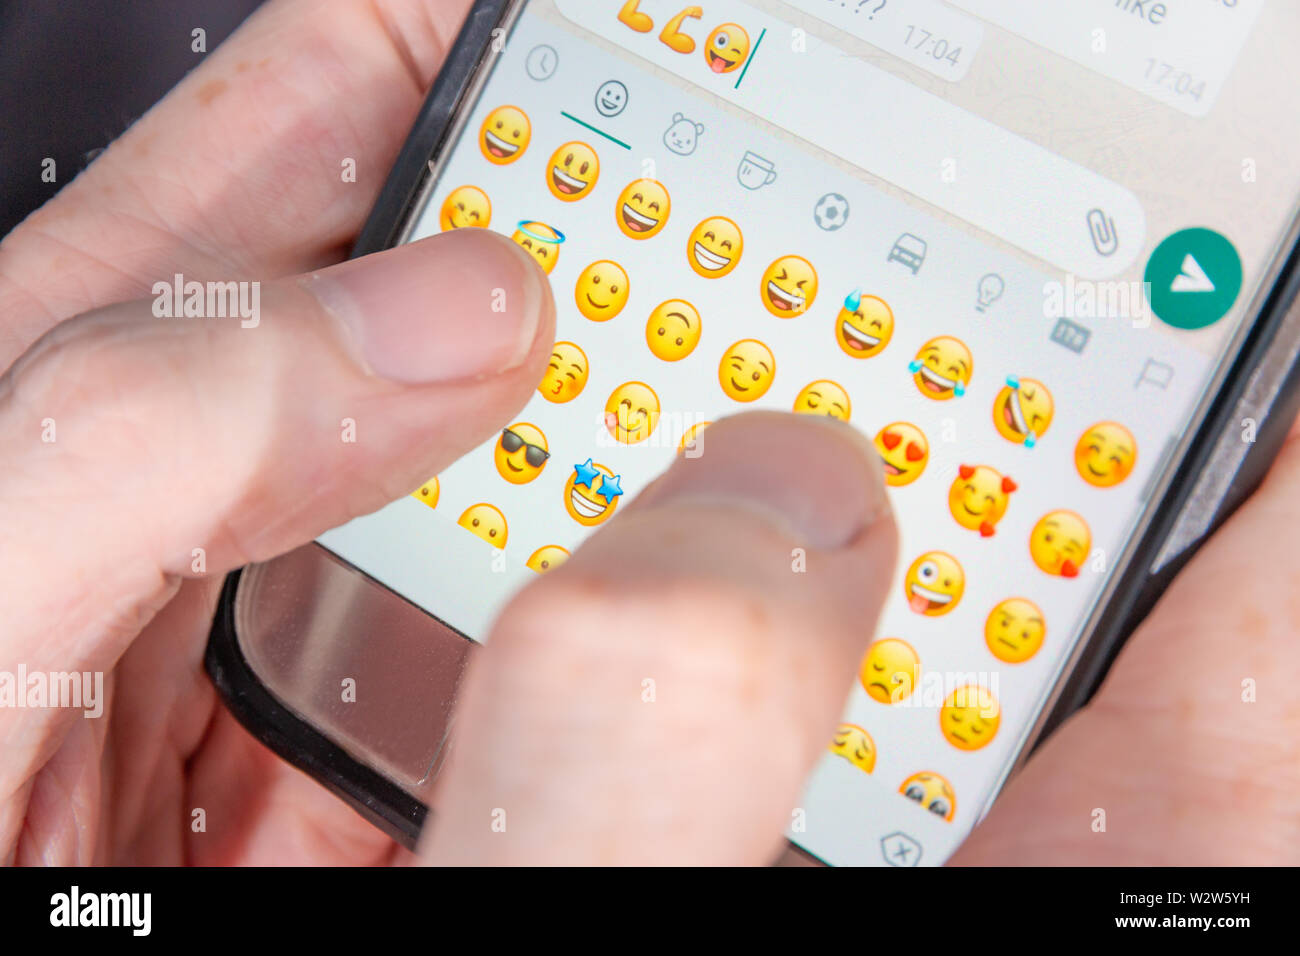 Una persona que escribe caracteres emoji en una aplicación de chat Foto de stock